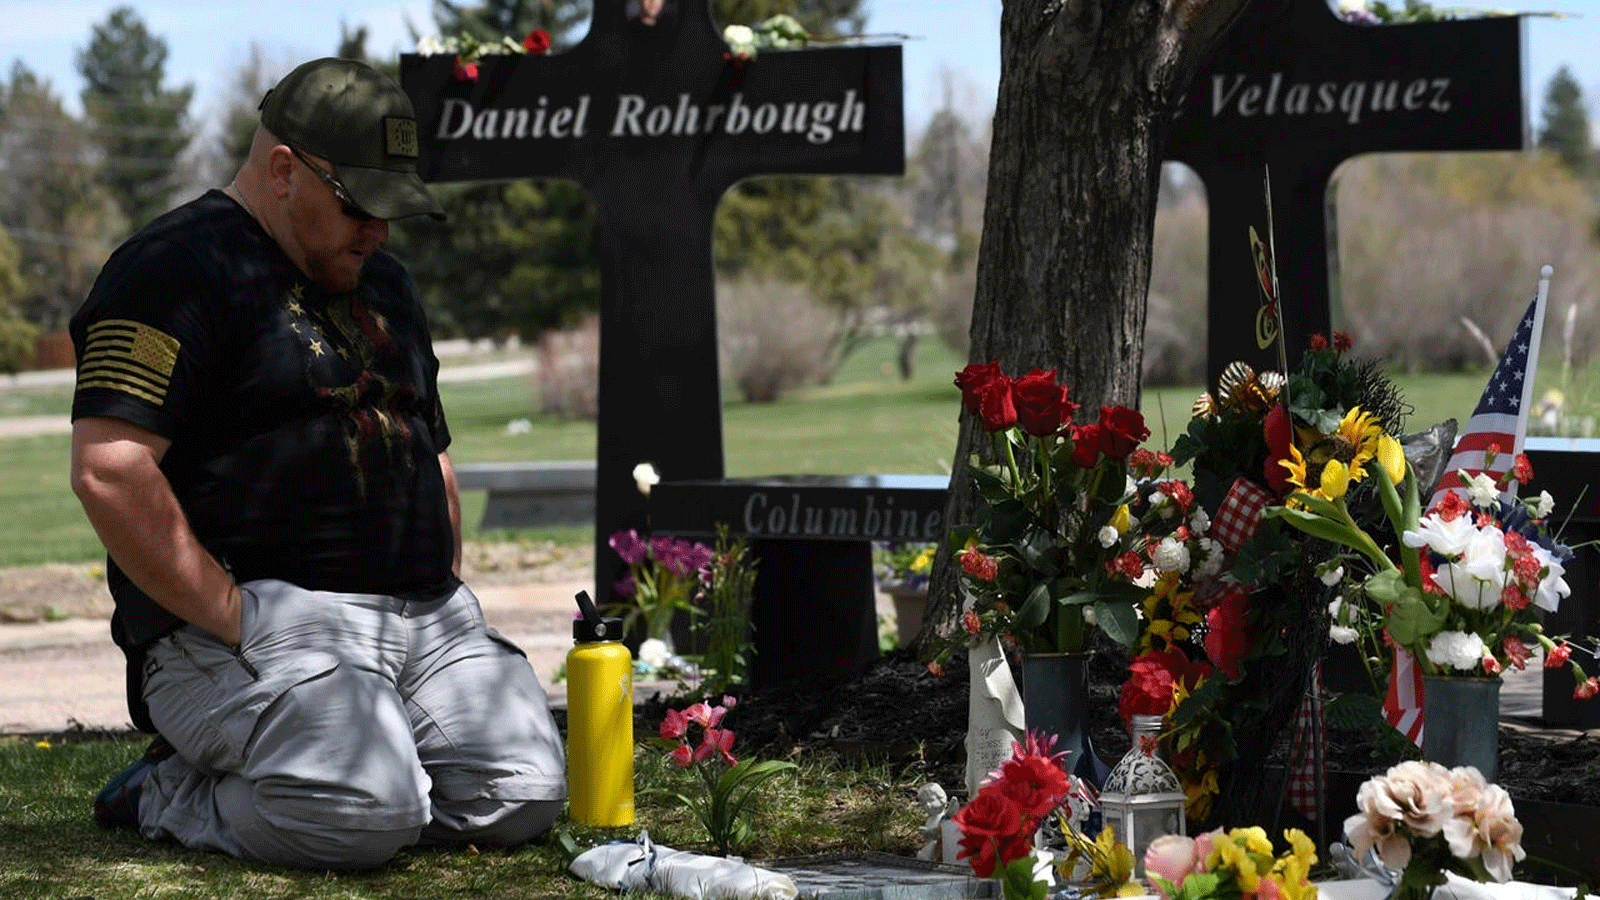 رجل يزور النصب التذكاري لضحايا حادث إطلاق النار في مدرسة كولومبين الثانوية عام 1999 في حدائق تشابل هيل التذكارية في ليتلتون، كولورادو في نيسان\ أبريل 2019 جيسون كونول